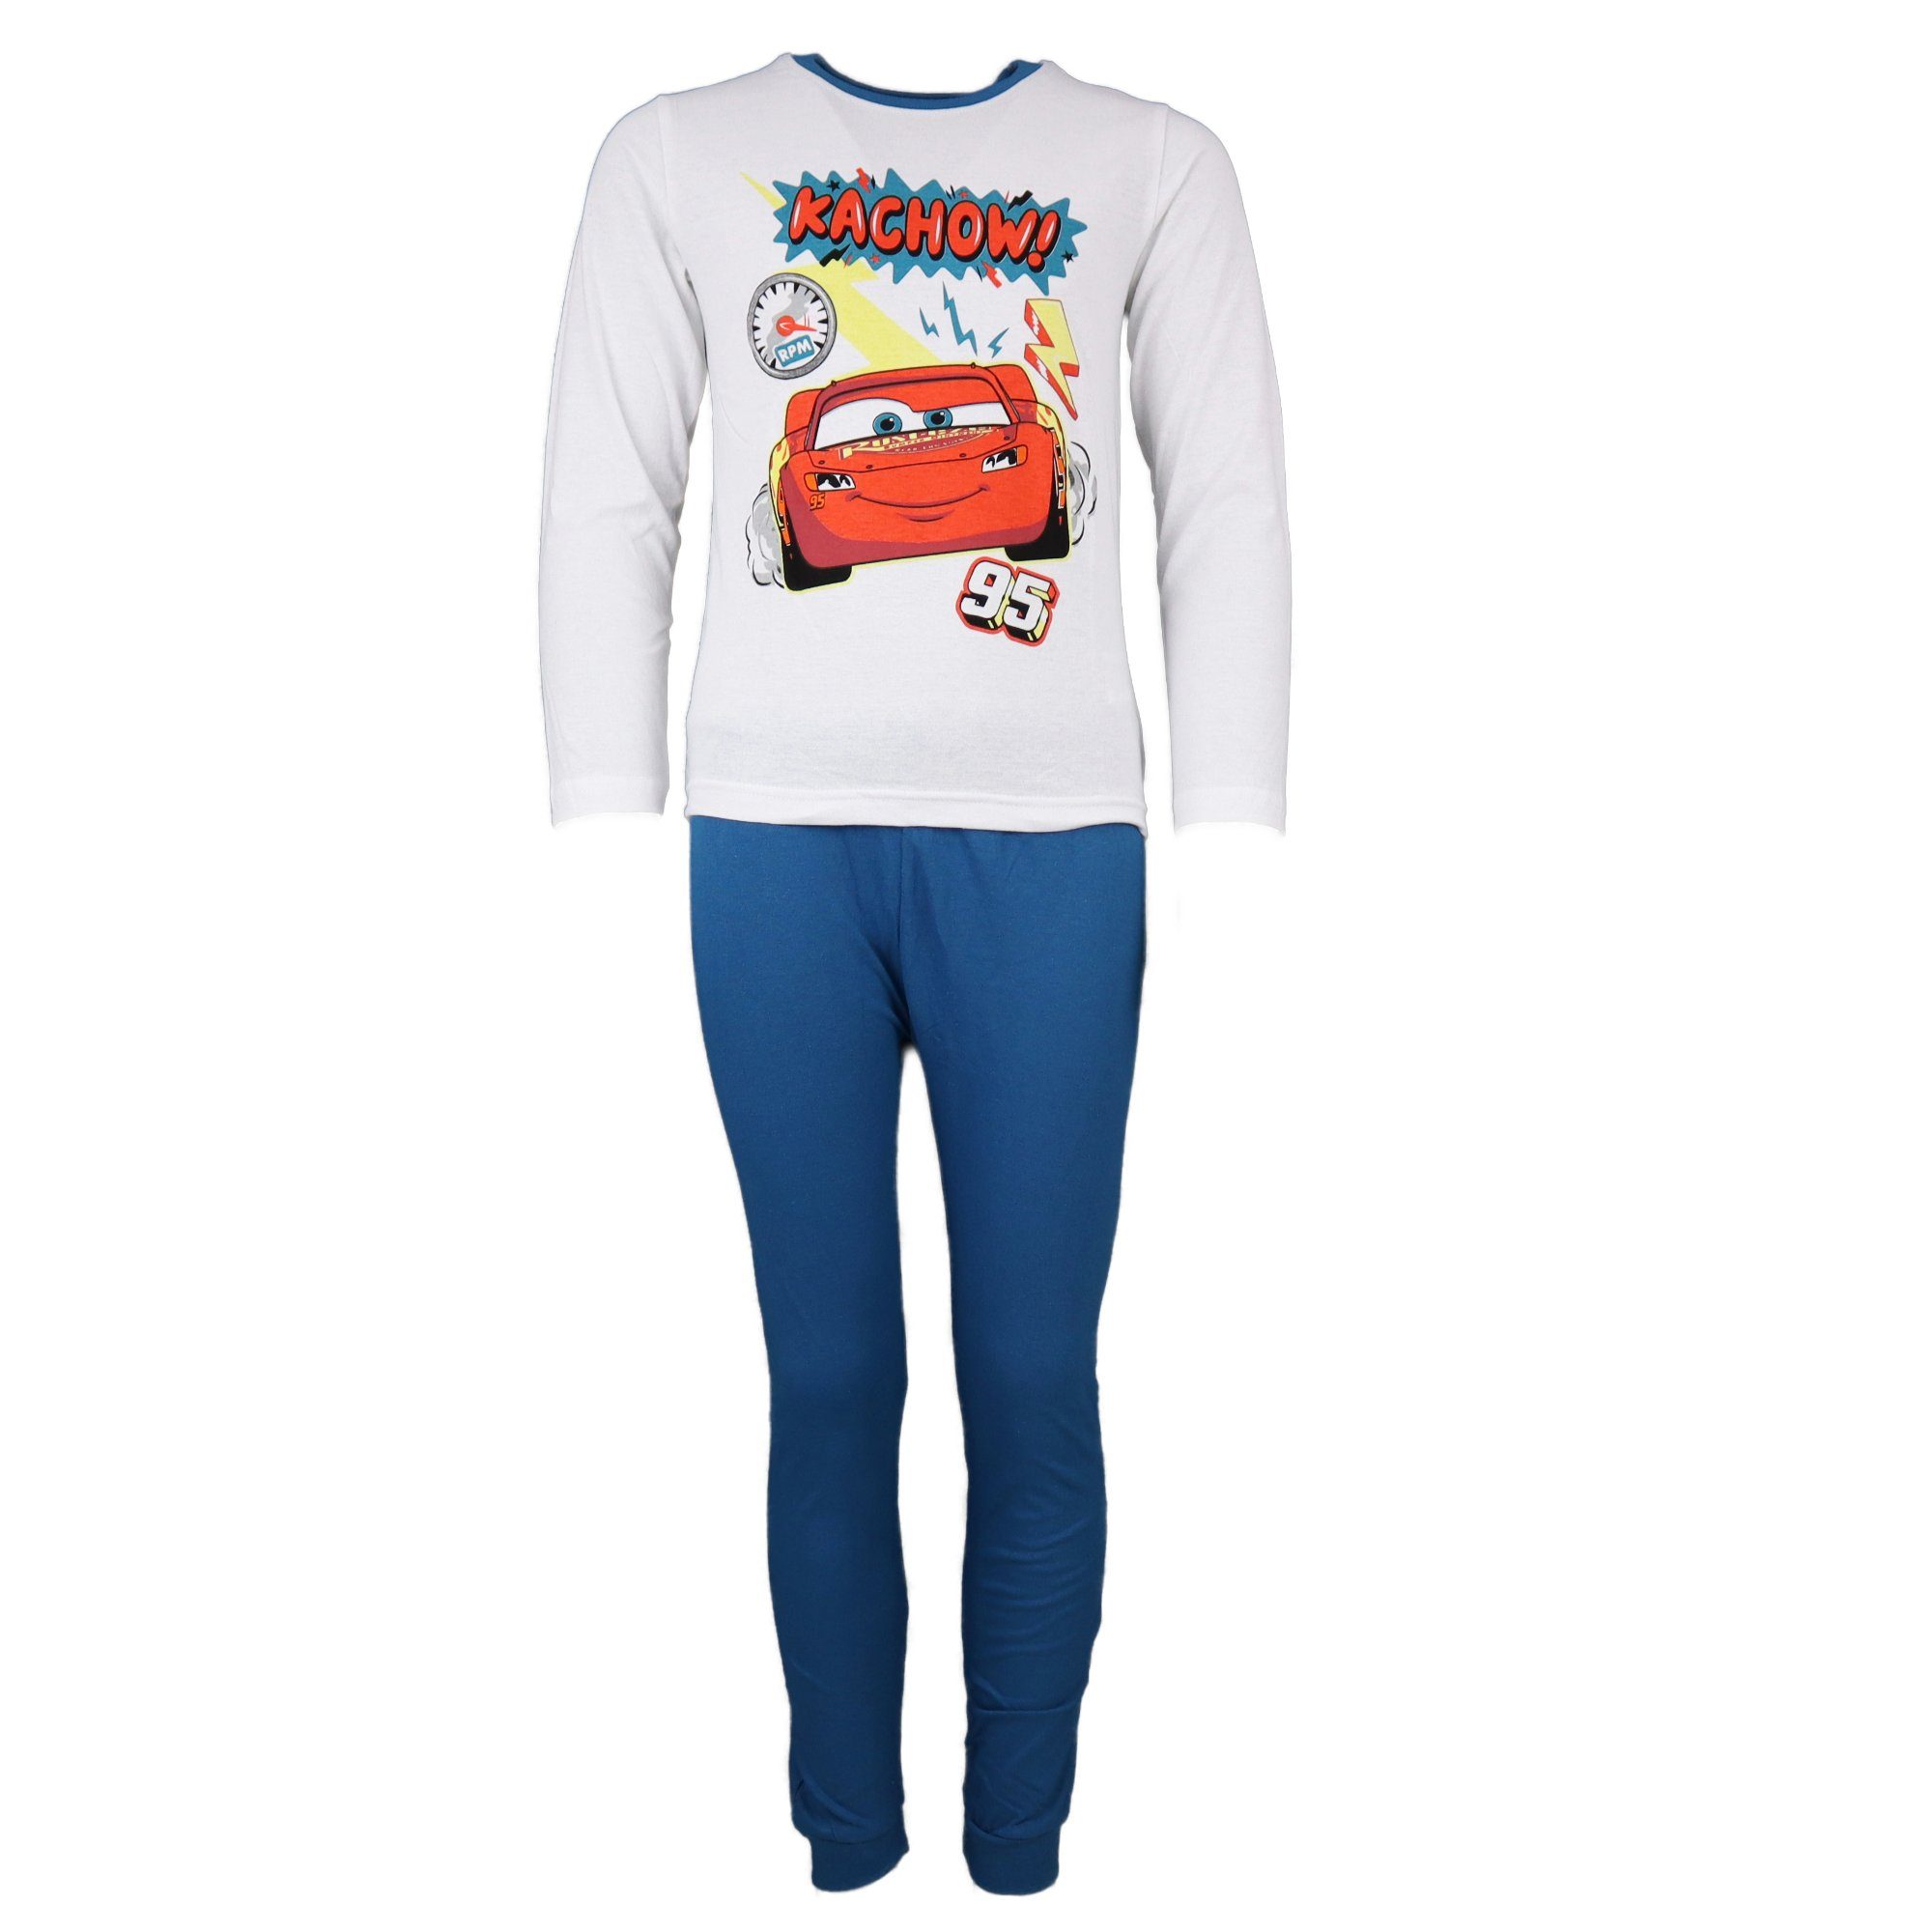 Baumwolle Pyjama Schlafanzug 98 Cars Weiß/Blau Gr. 100% bis Disney 3 128, McQueen Kinder Lightning